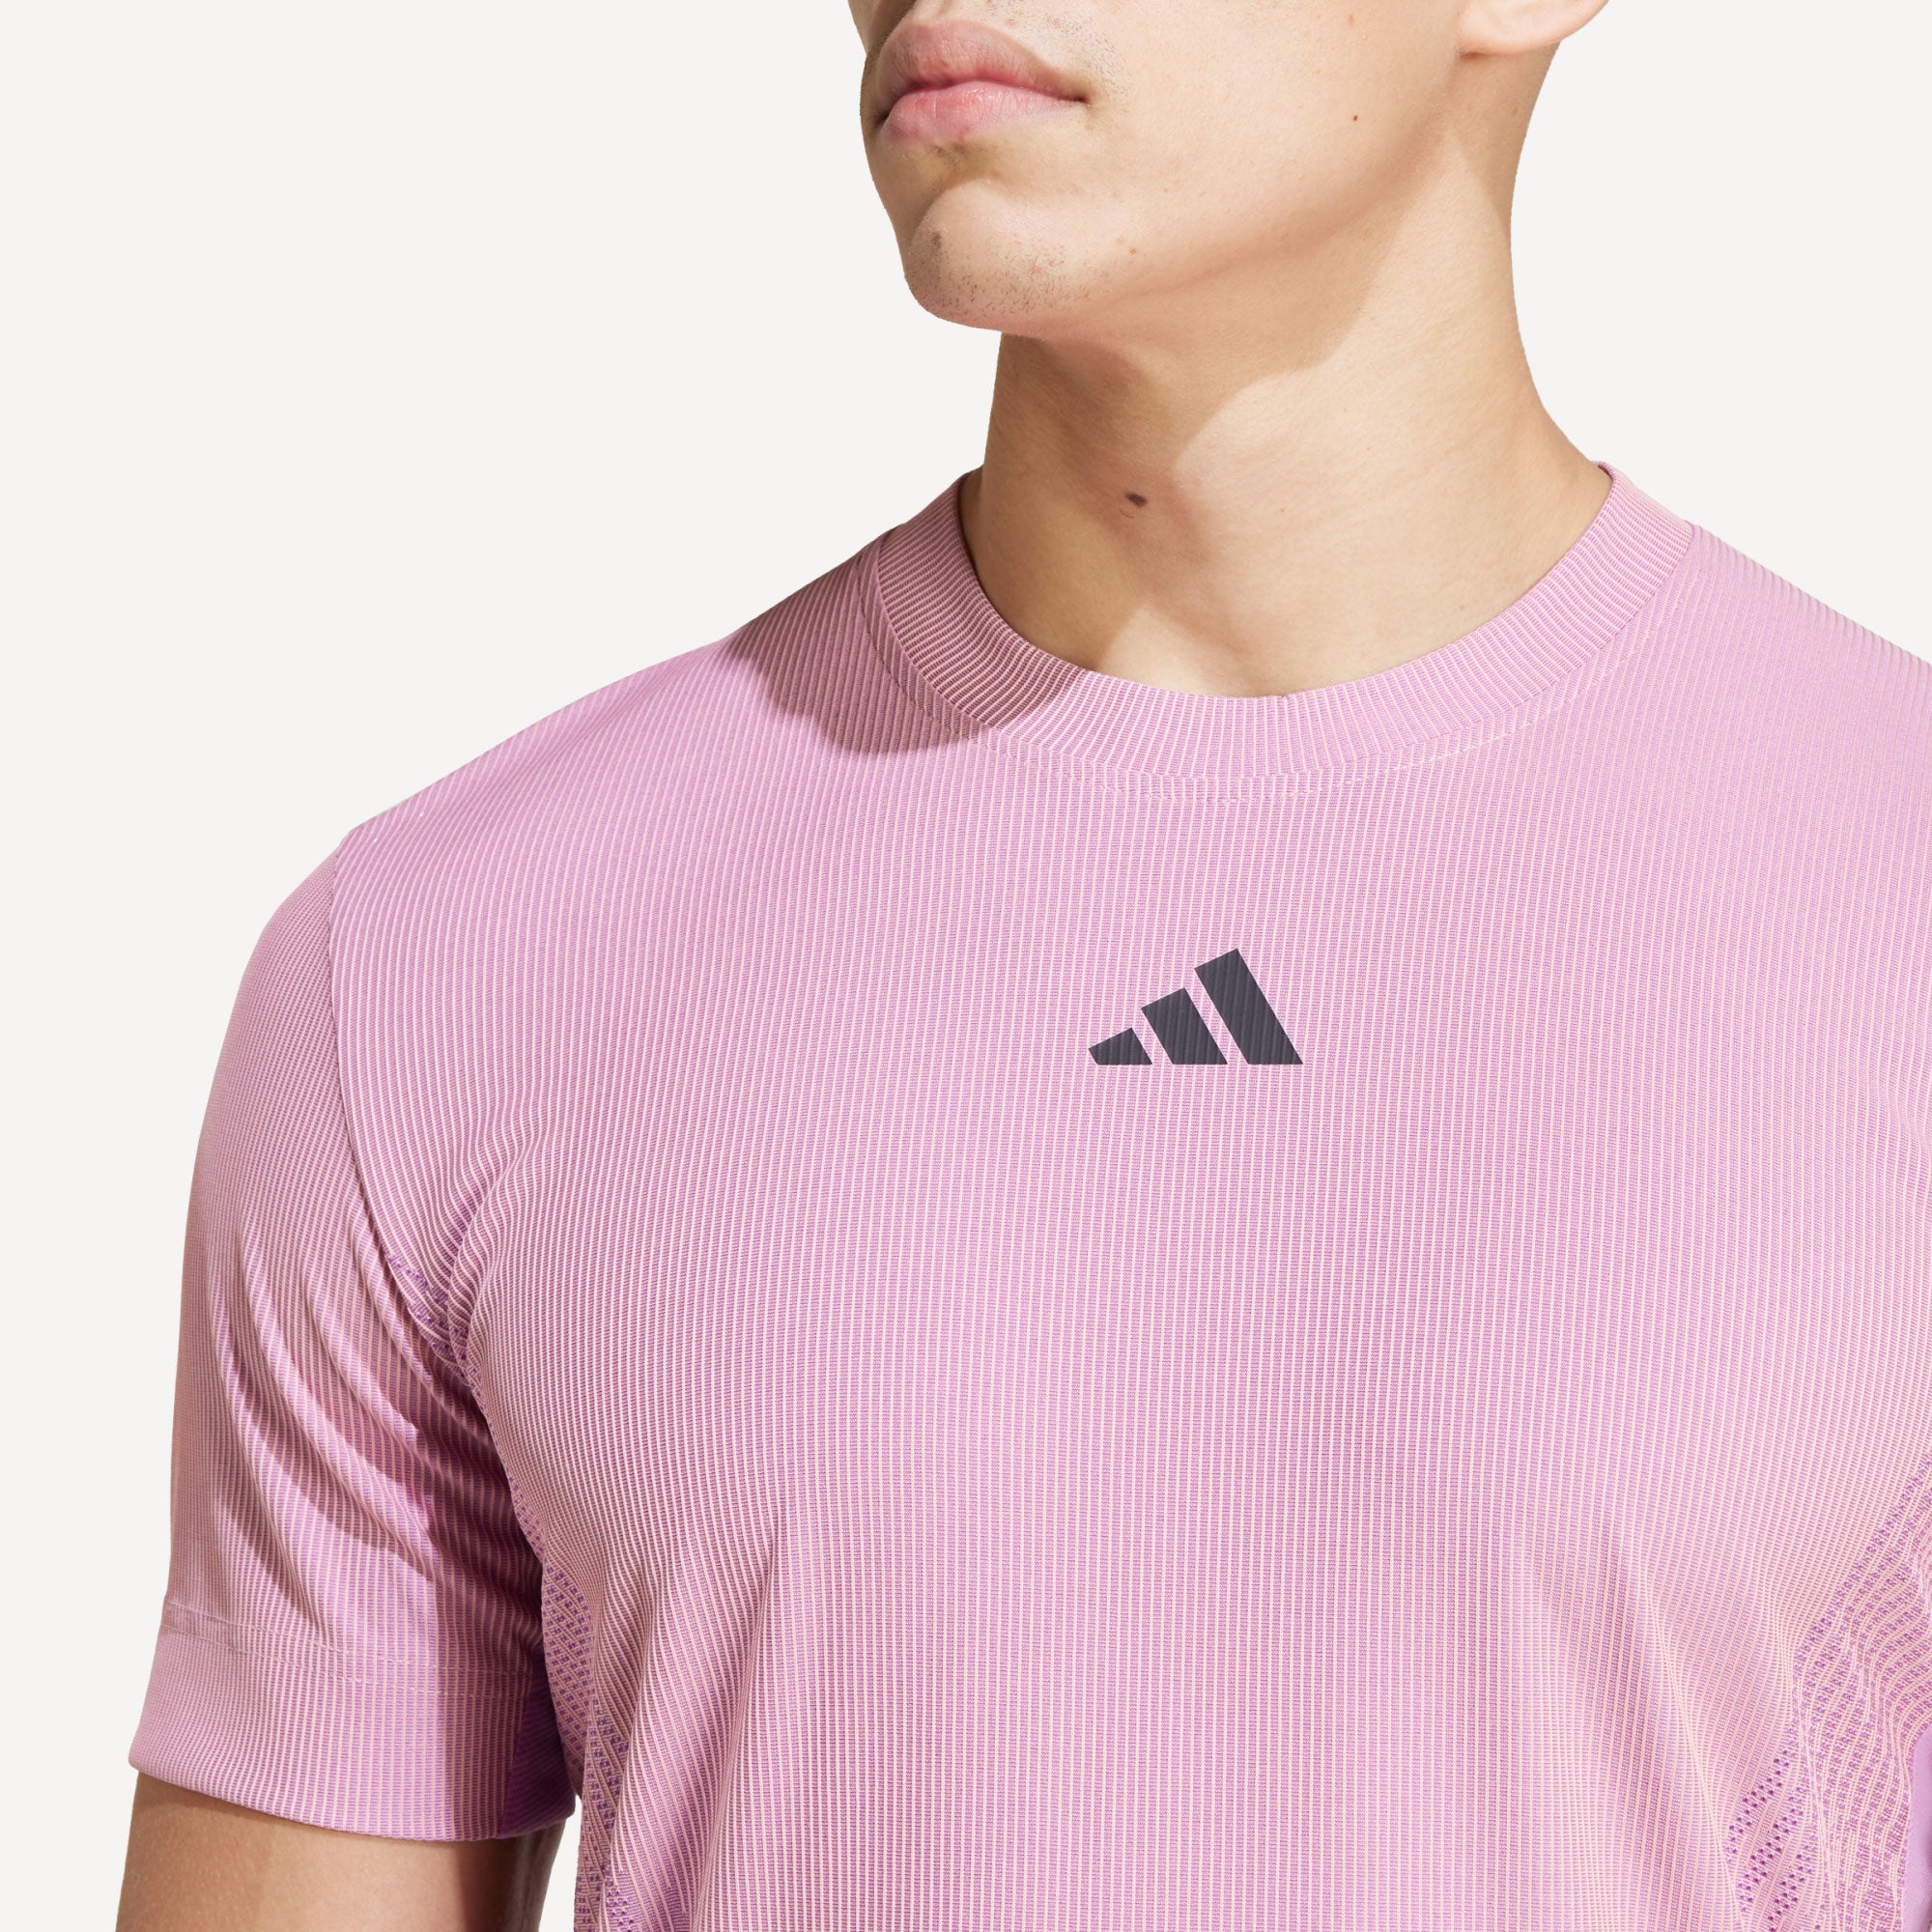 adidas Pro Men's Airchill Tennis Shirt - Pink (5)